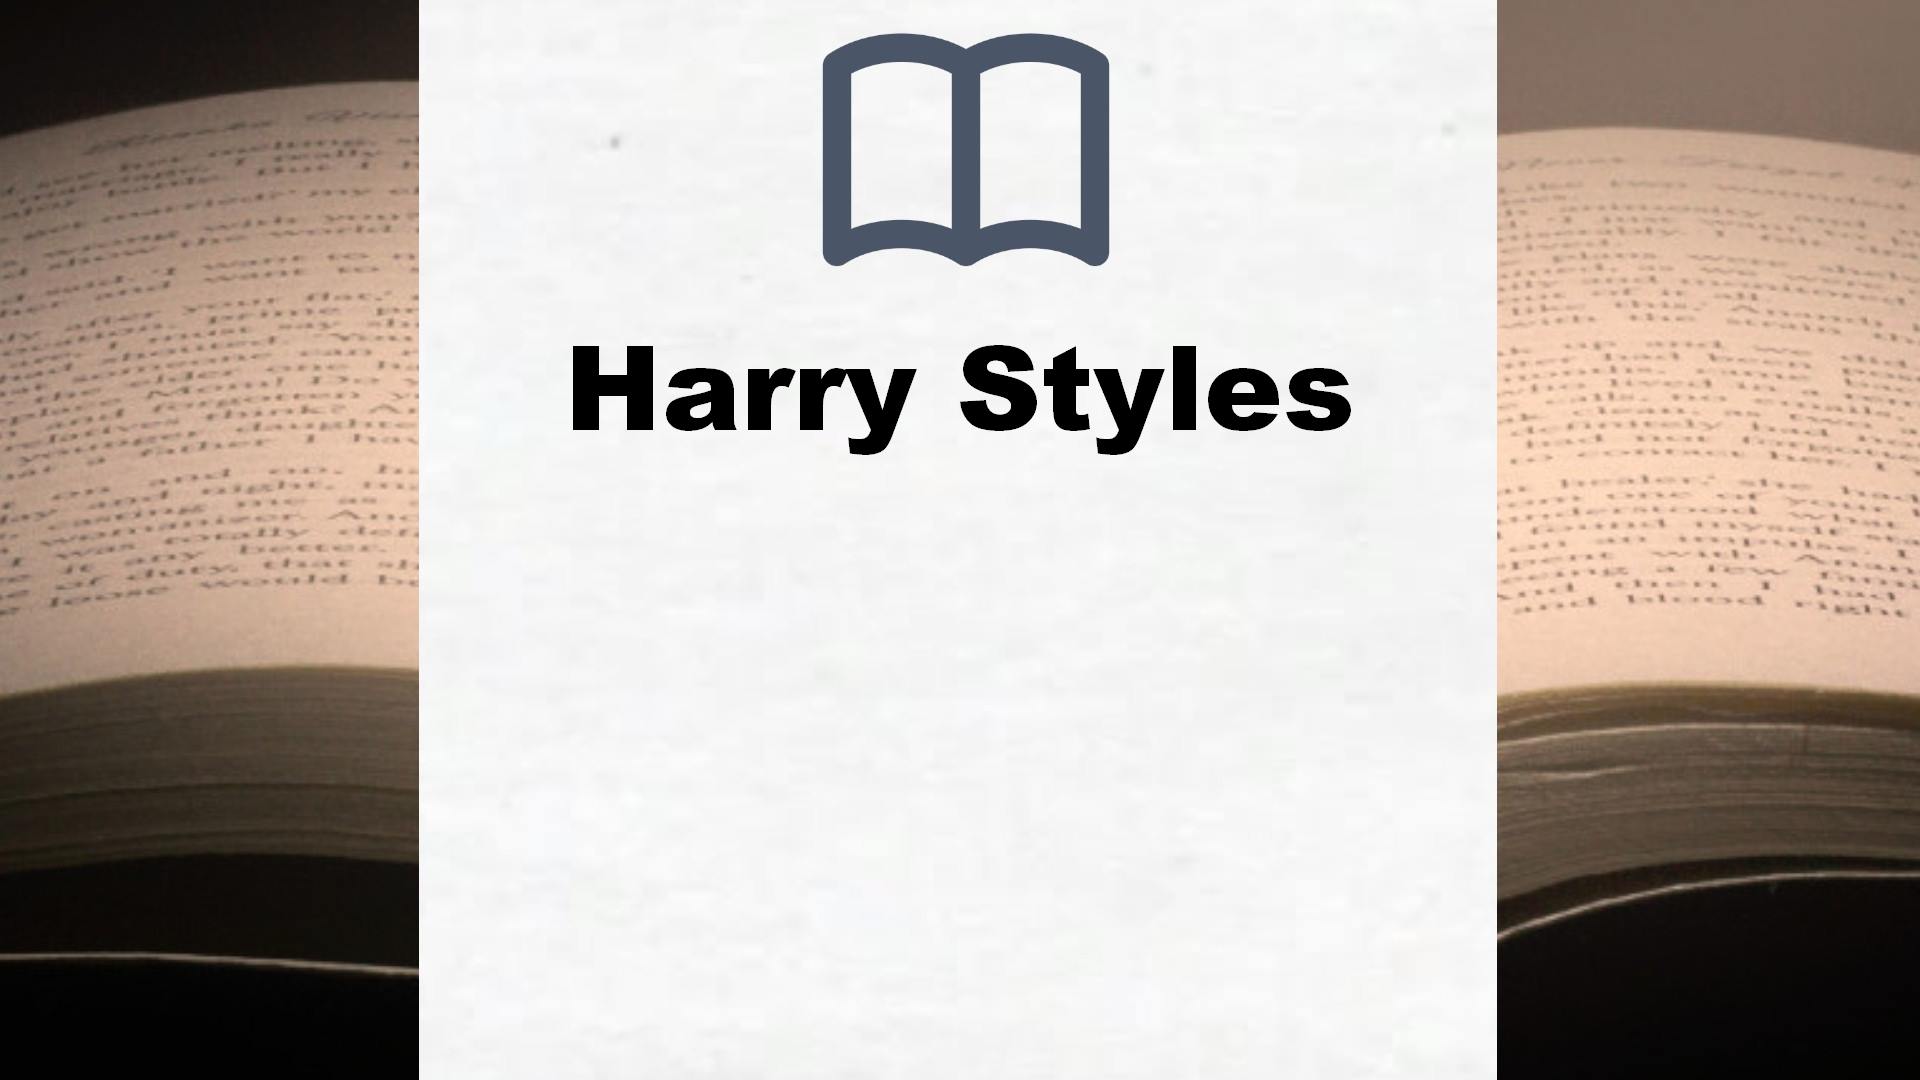 Bücher über Harry Styles